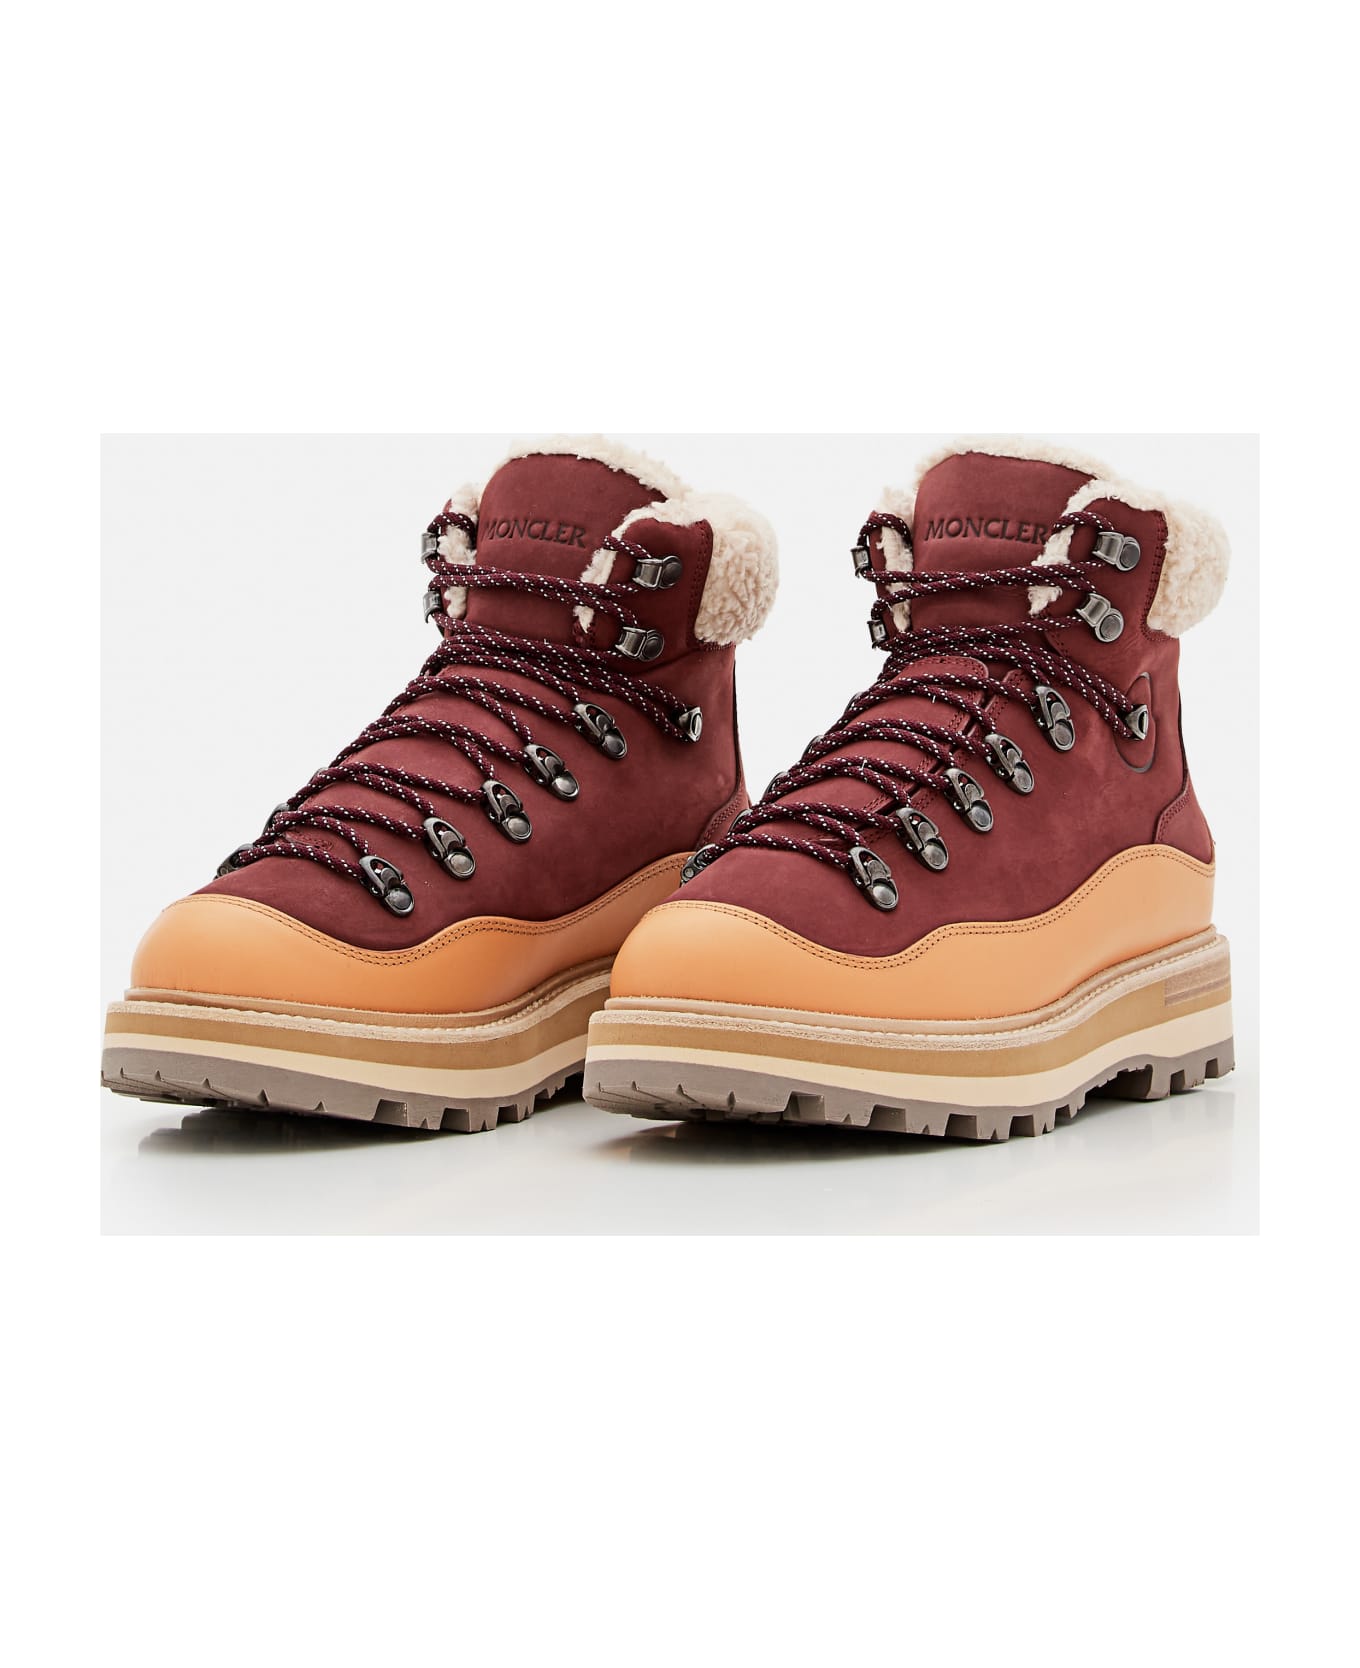 Moncler 40mm Peka Trek Hiking Boots - Brown